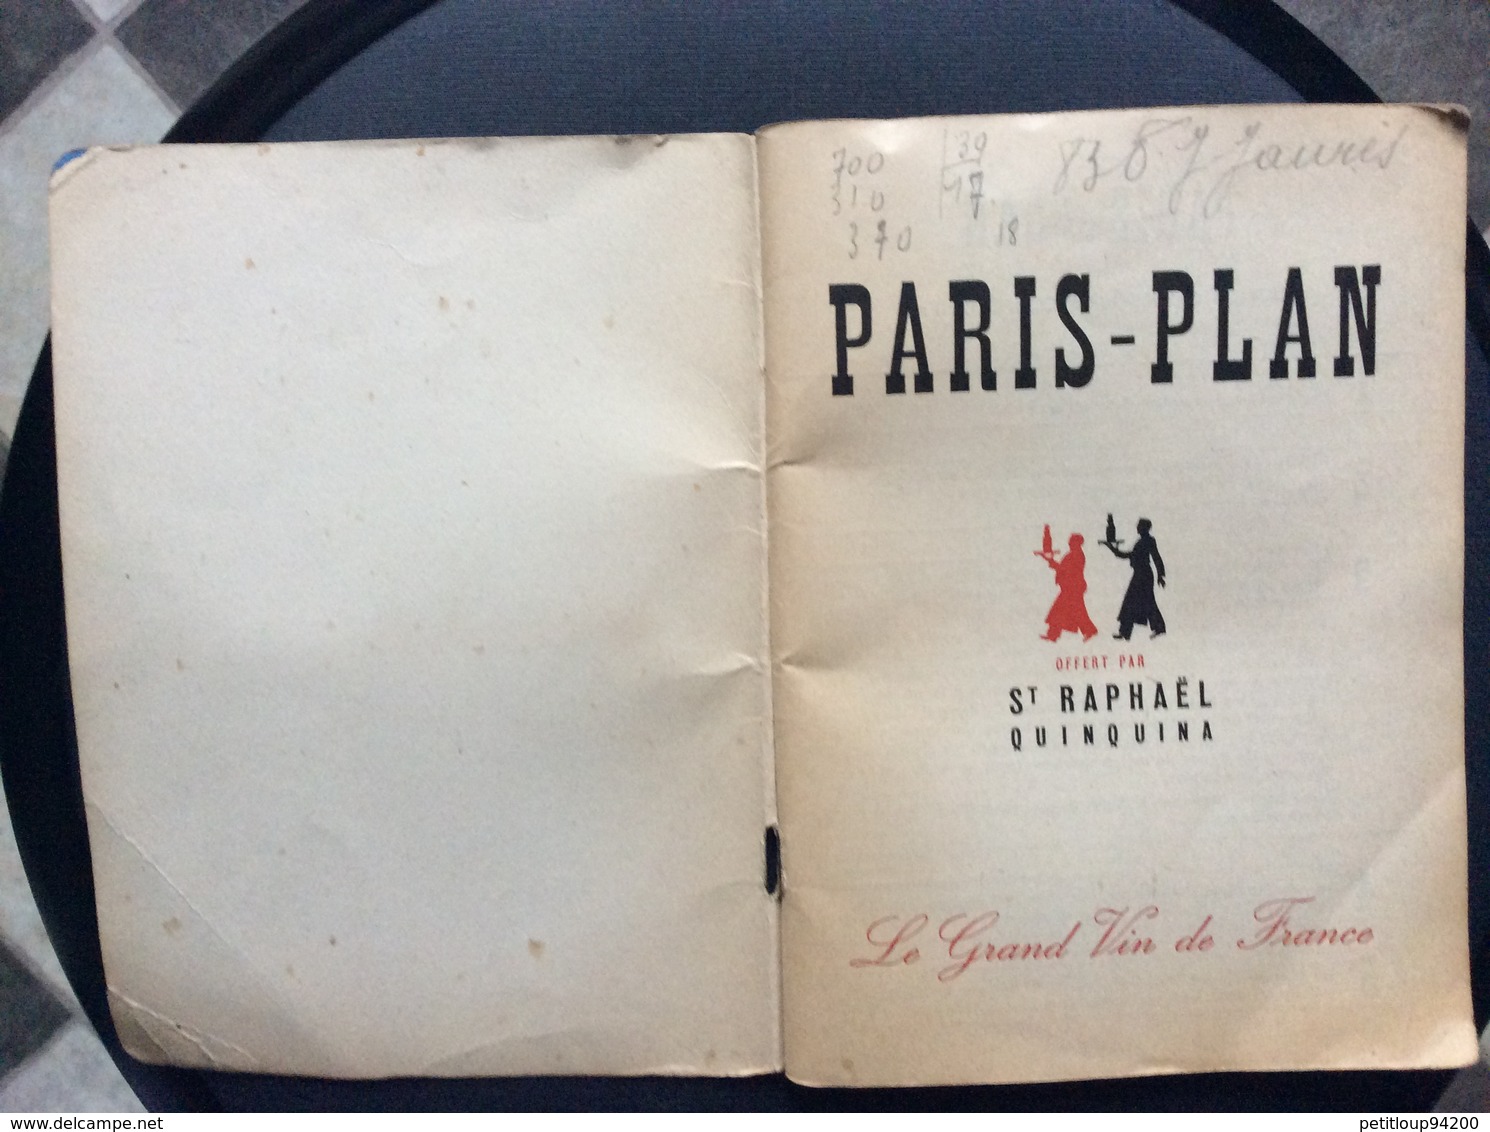 PARIS-PLAN Offert Par St RAPHAEL QUINQUINA Exposition Internationale Des Arts Et Des Techniques  ANNEE 1937 - Europe